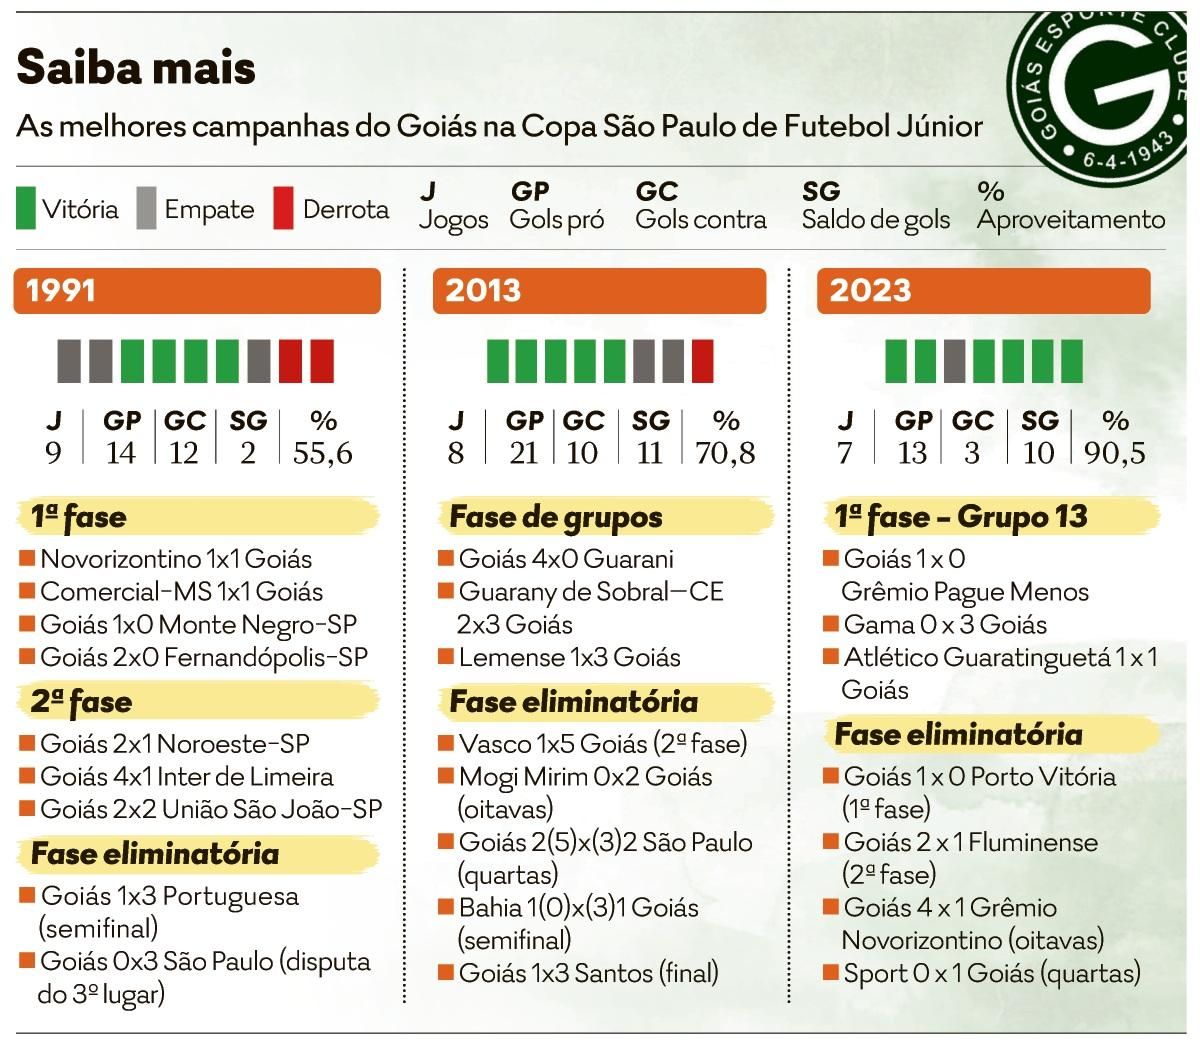 Ingresso para jogo do Palmeiras no mundial custa até R$ 300